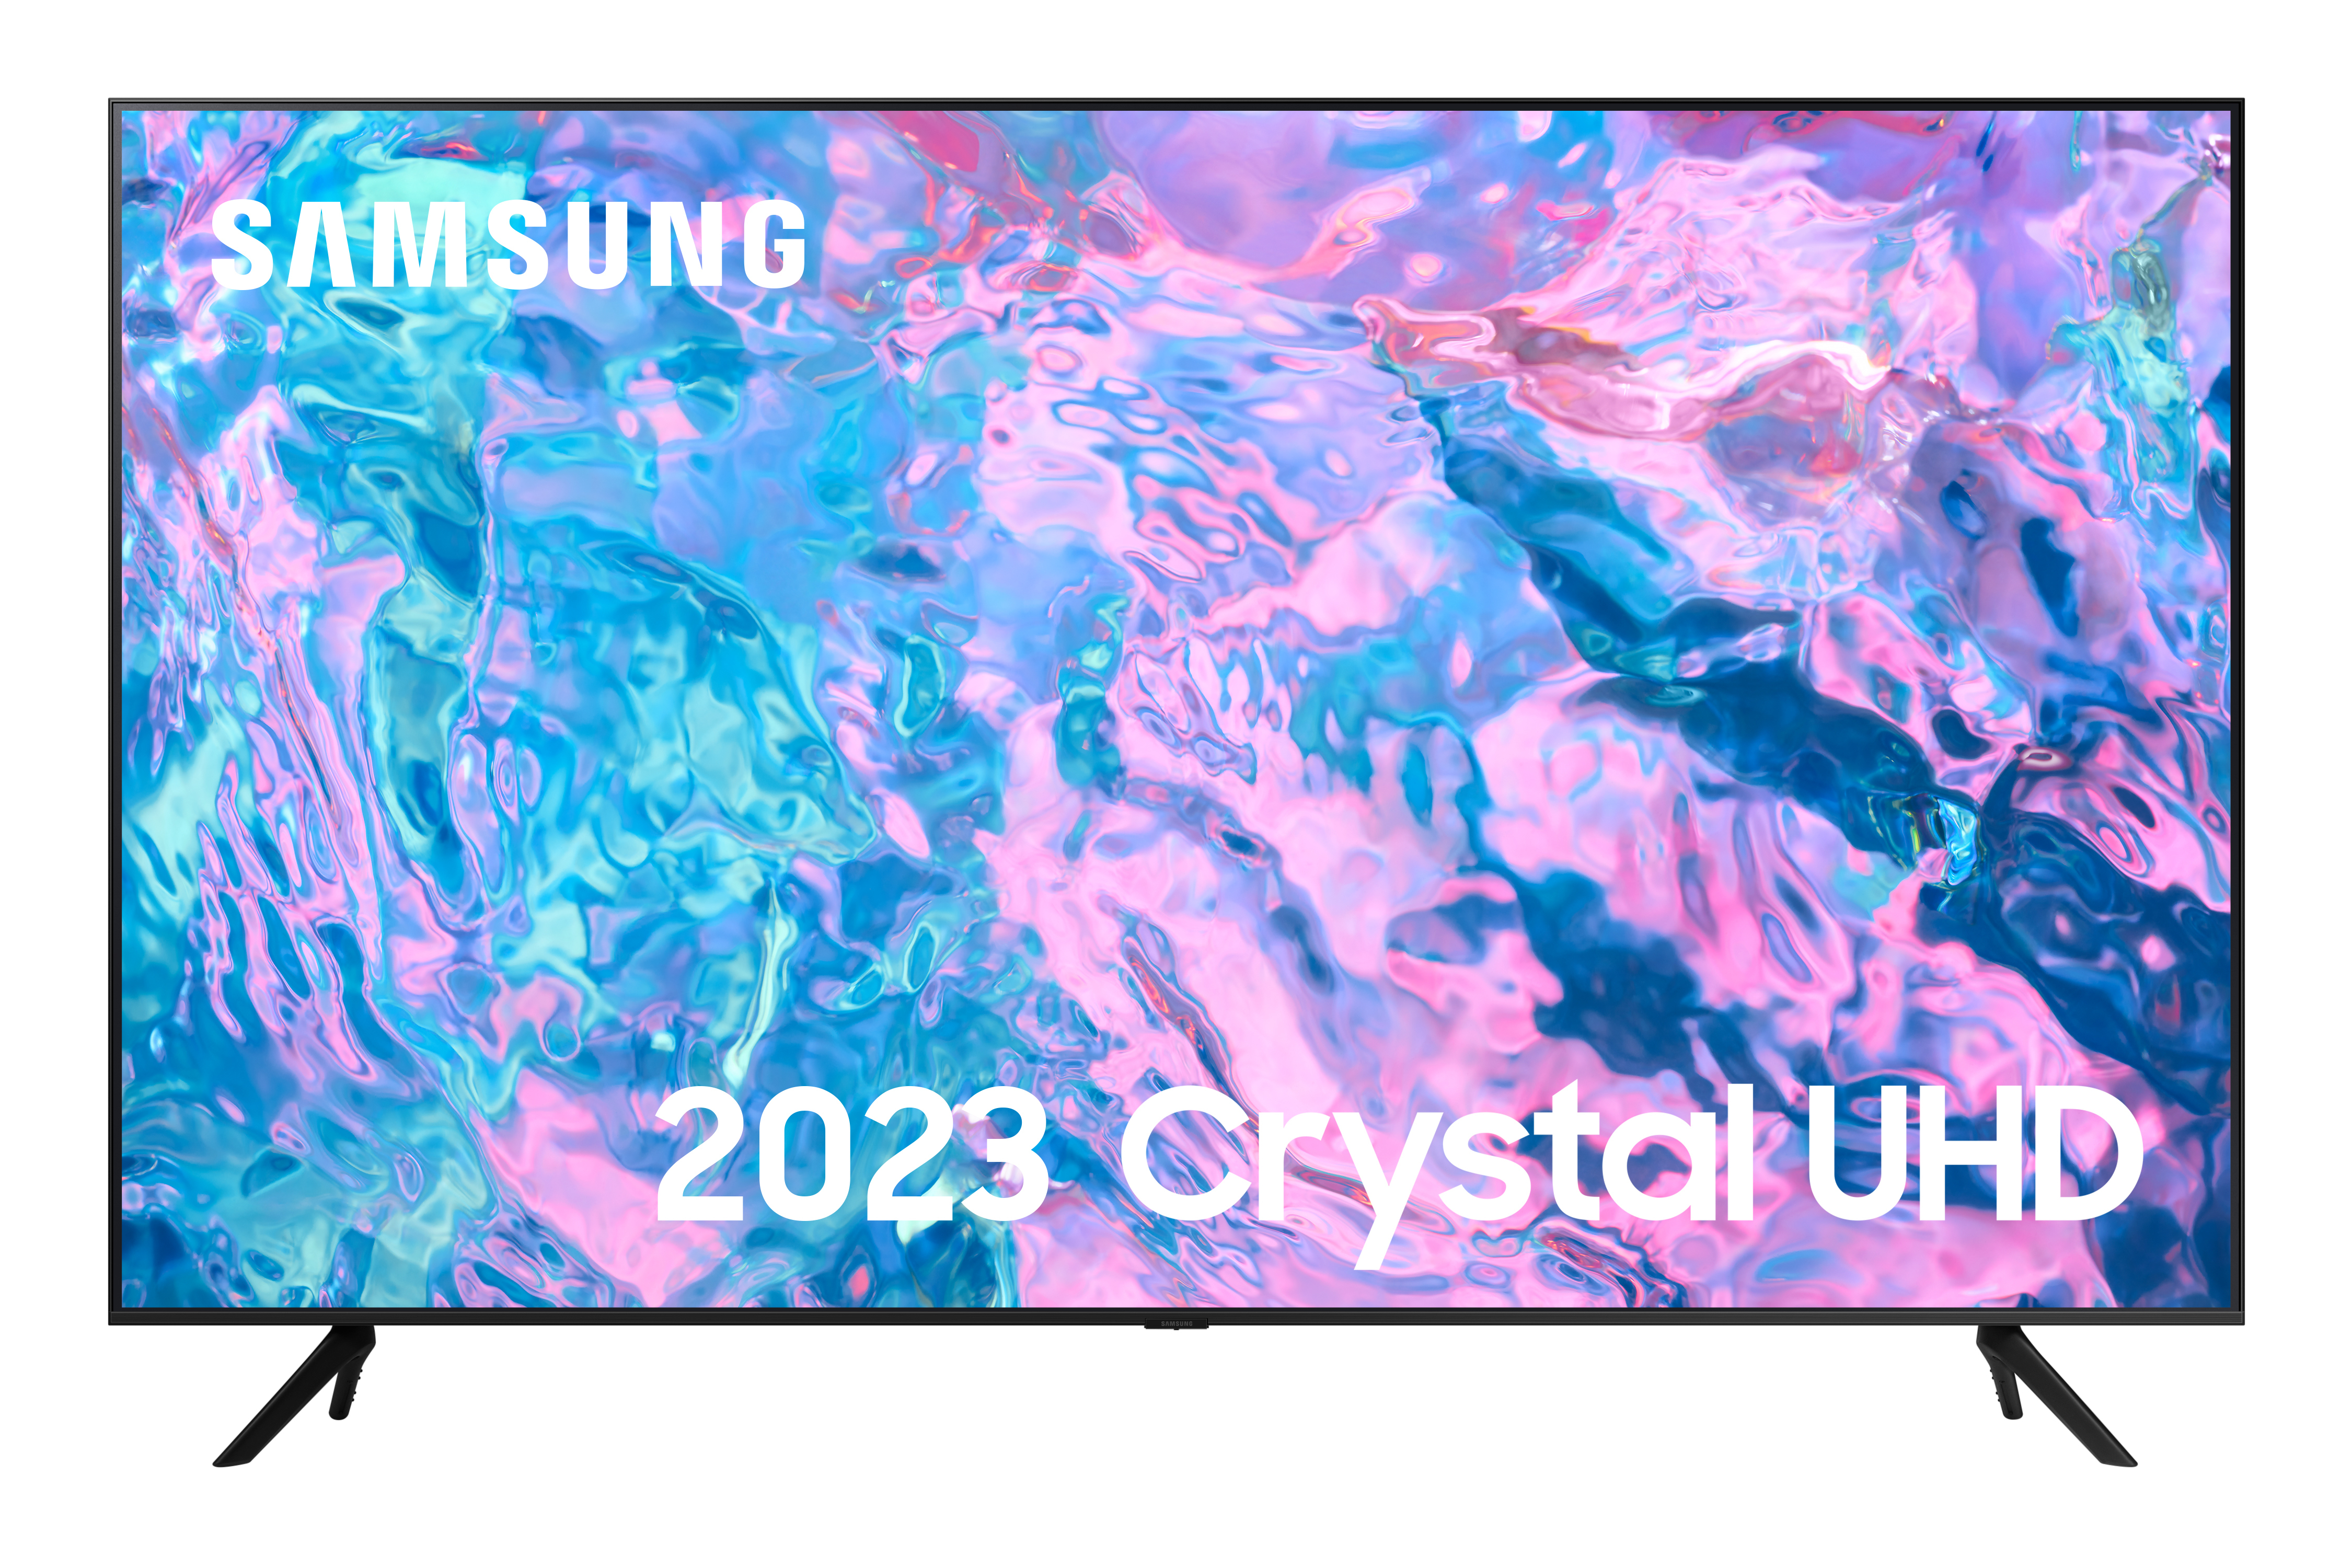 Samsung UE50CU7100KXXU